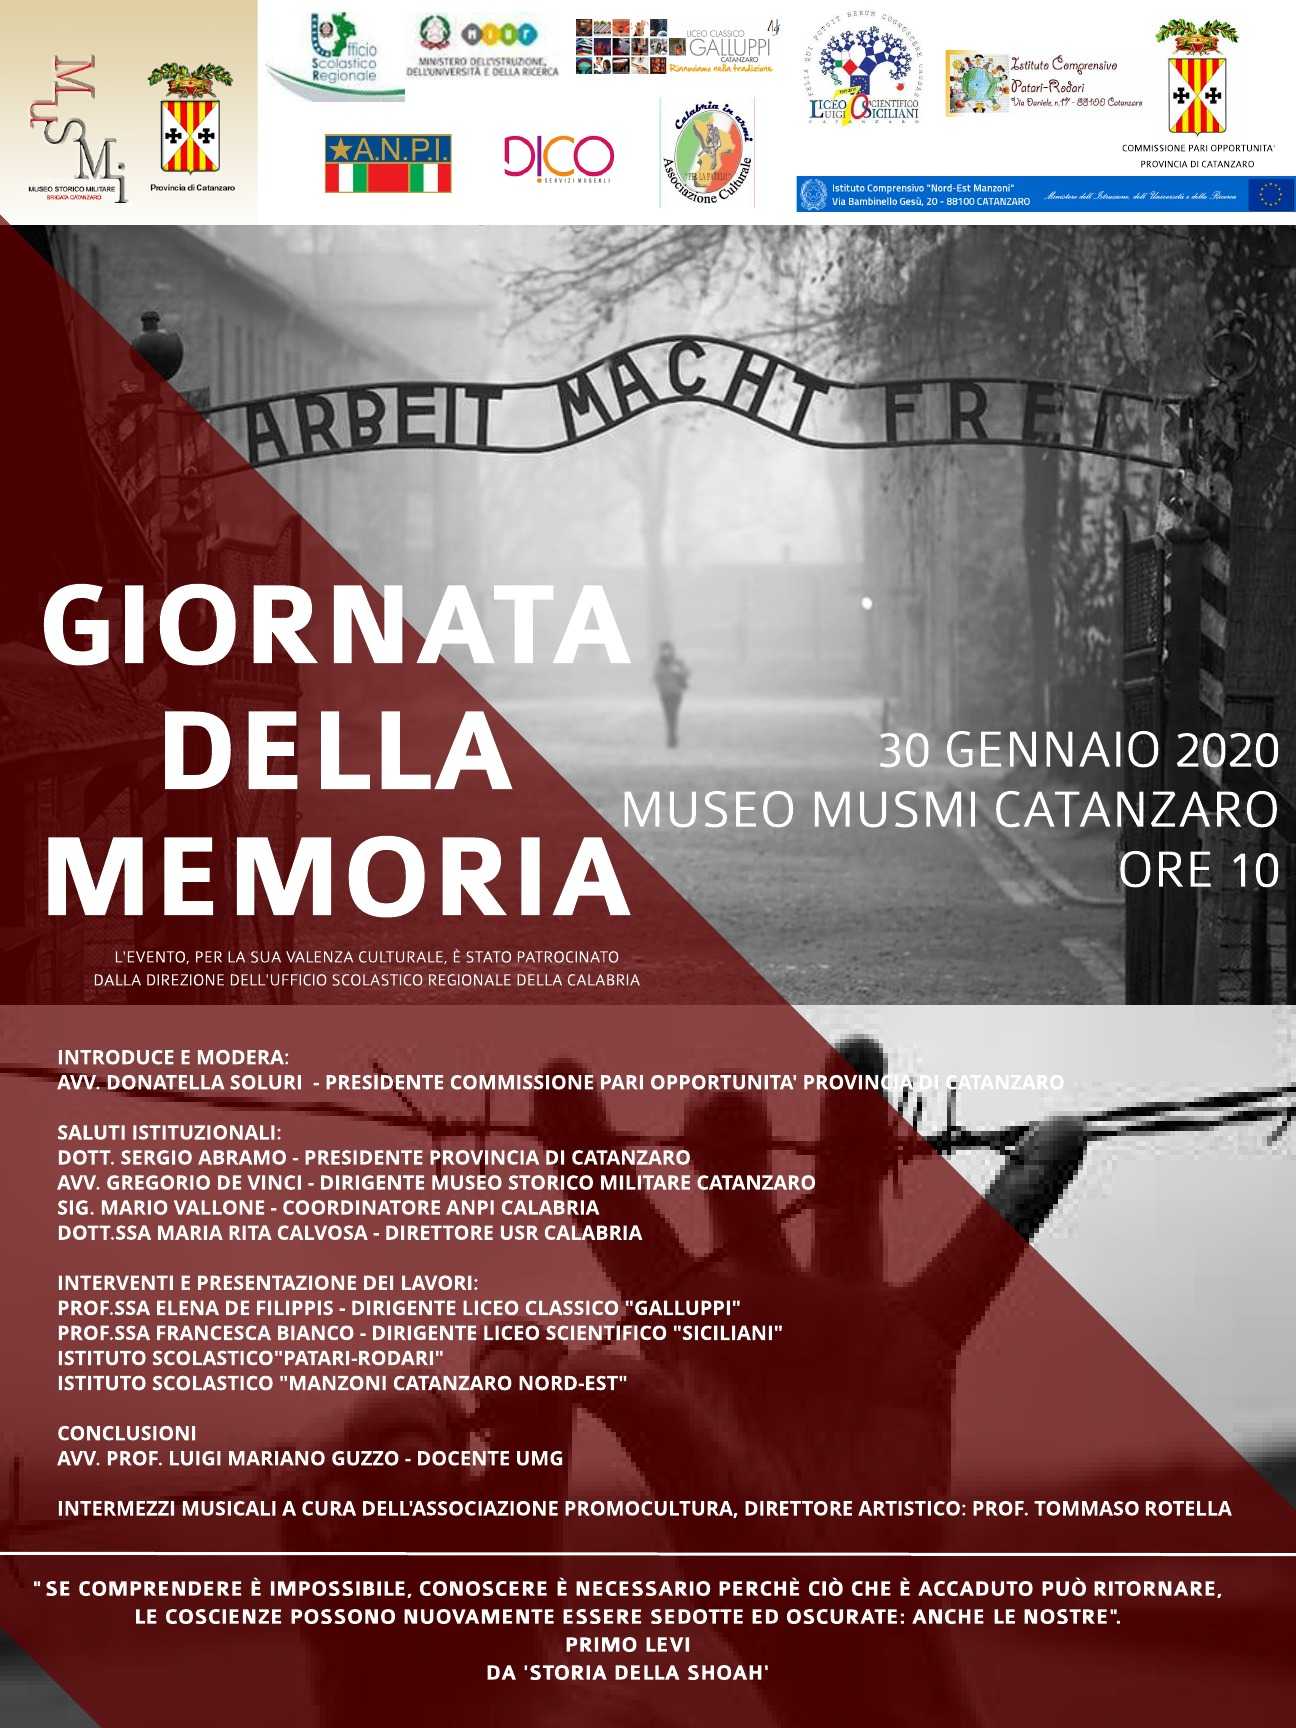 Giornata della memoria, domani al Musmi iniziativa organizzata dalla provincia di Catanzaro